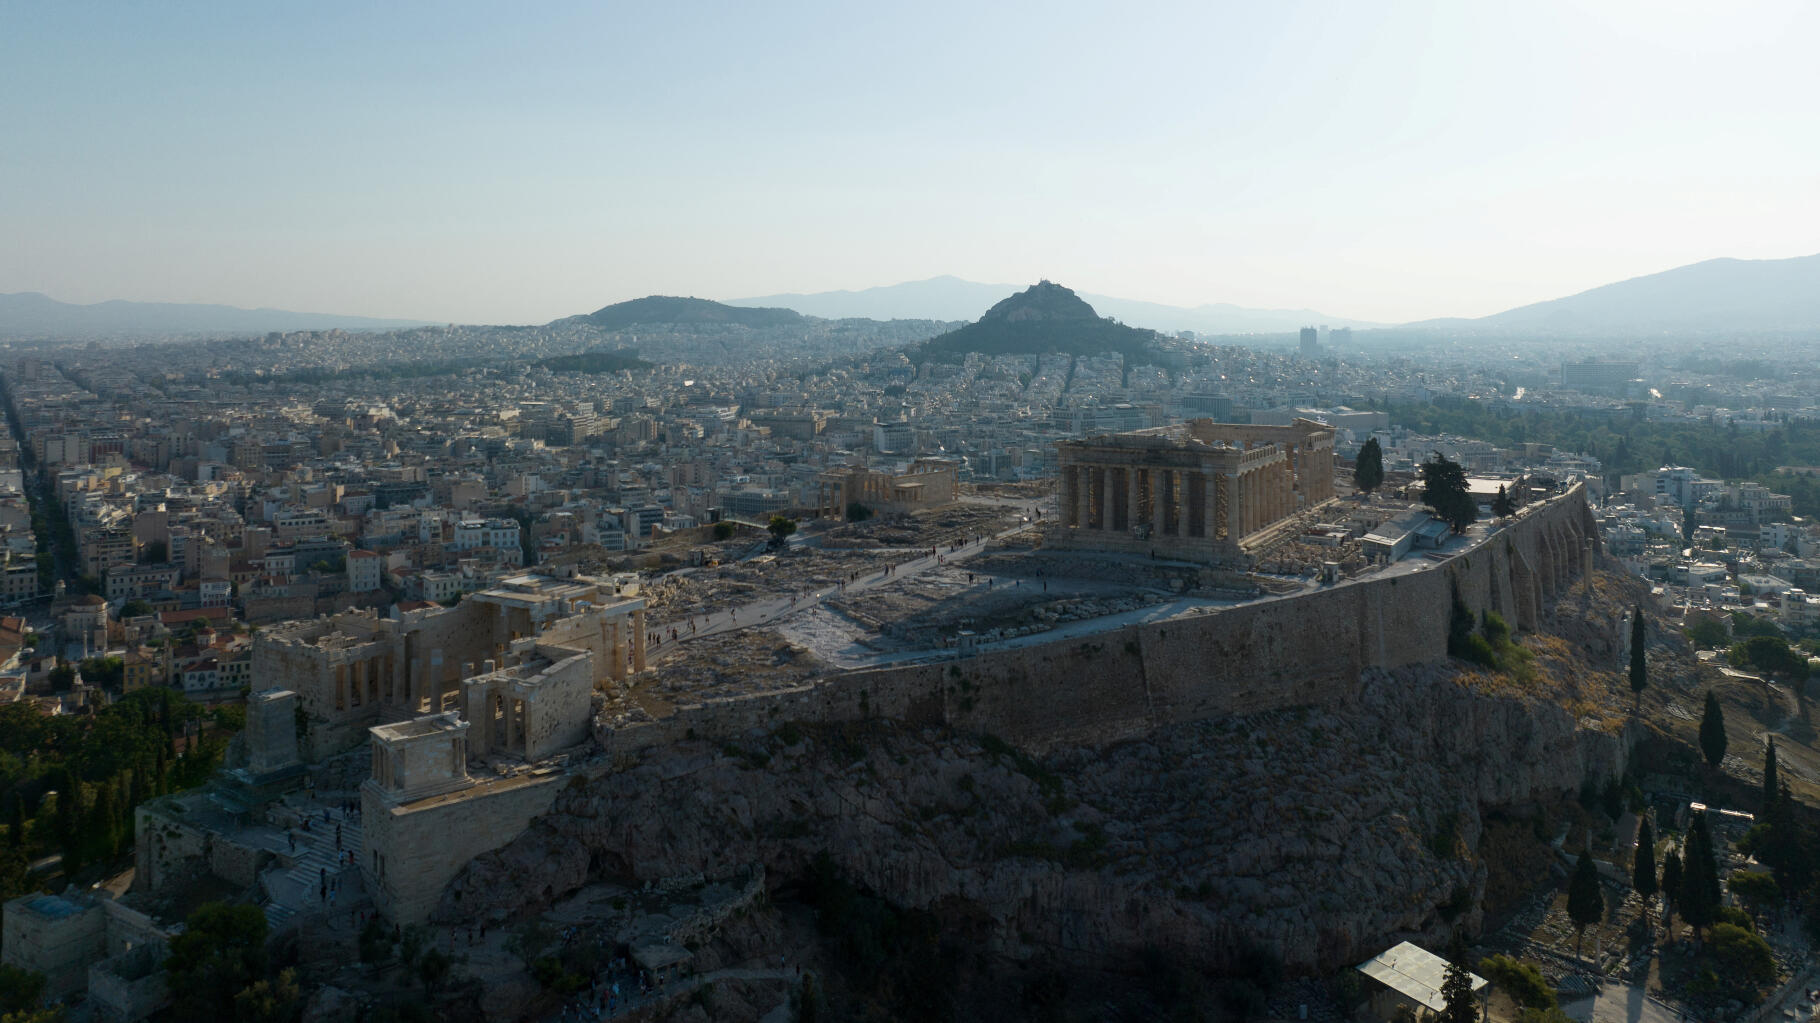 Canicule : en Grèce, l'Acropole d'Athènes fermée aux heures les plus chaudes